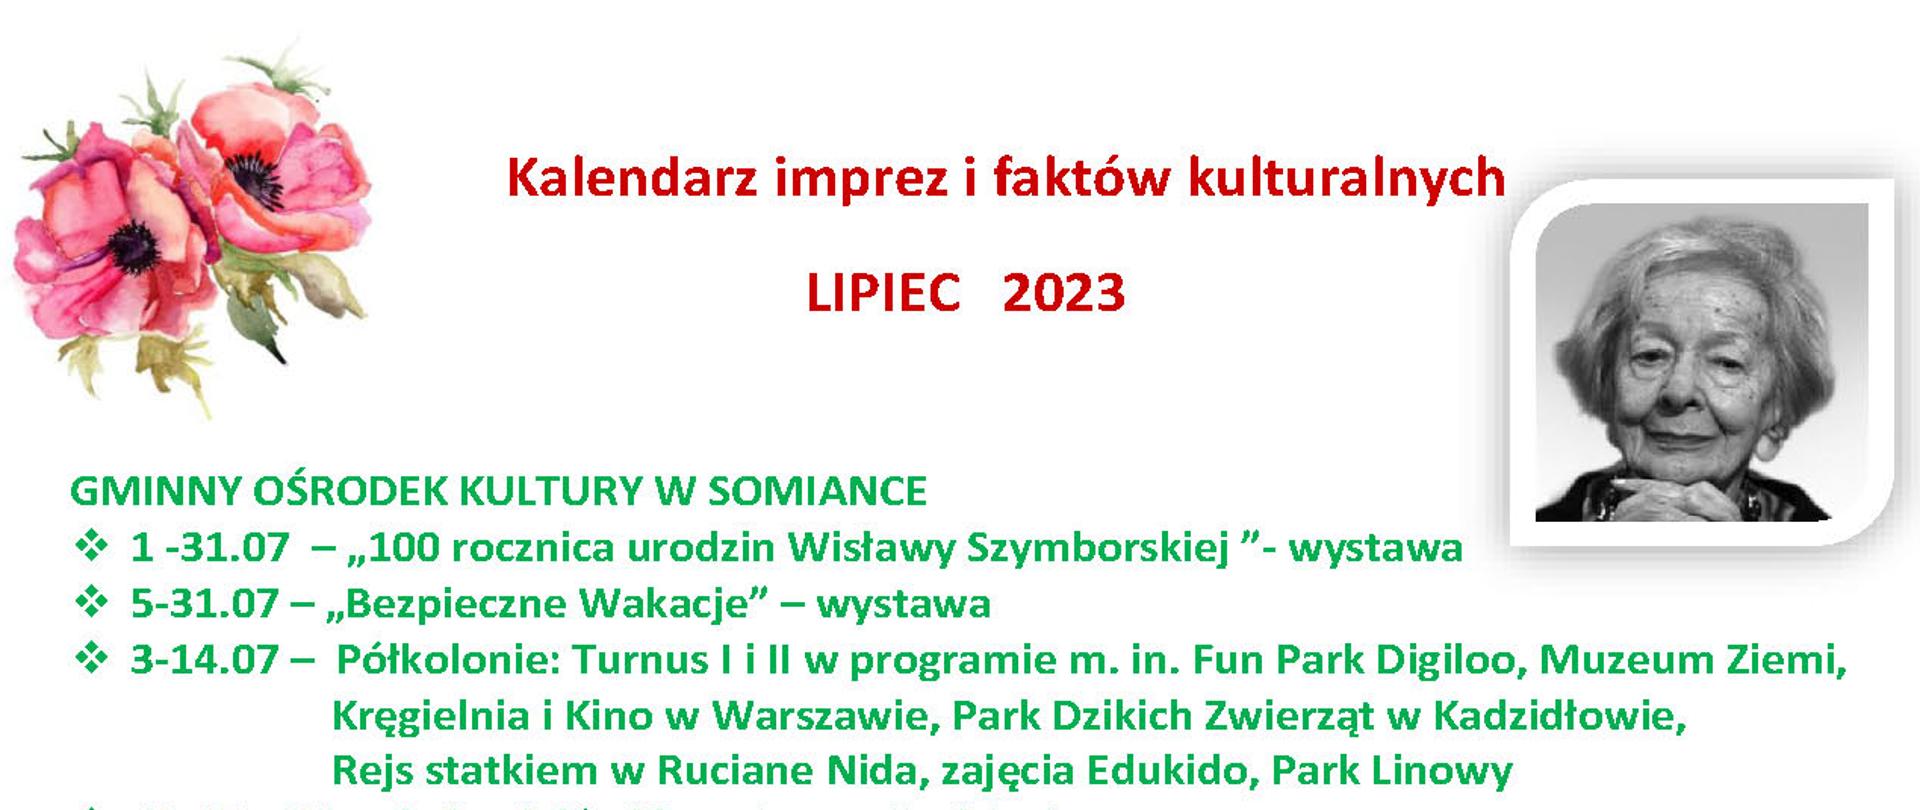 Kalendarz zajęć LIPIEC 2023